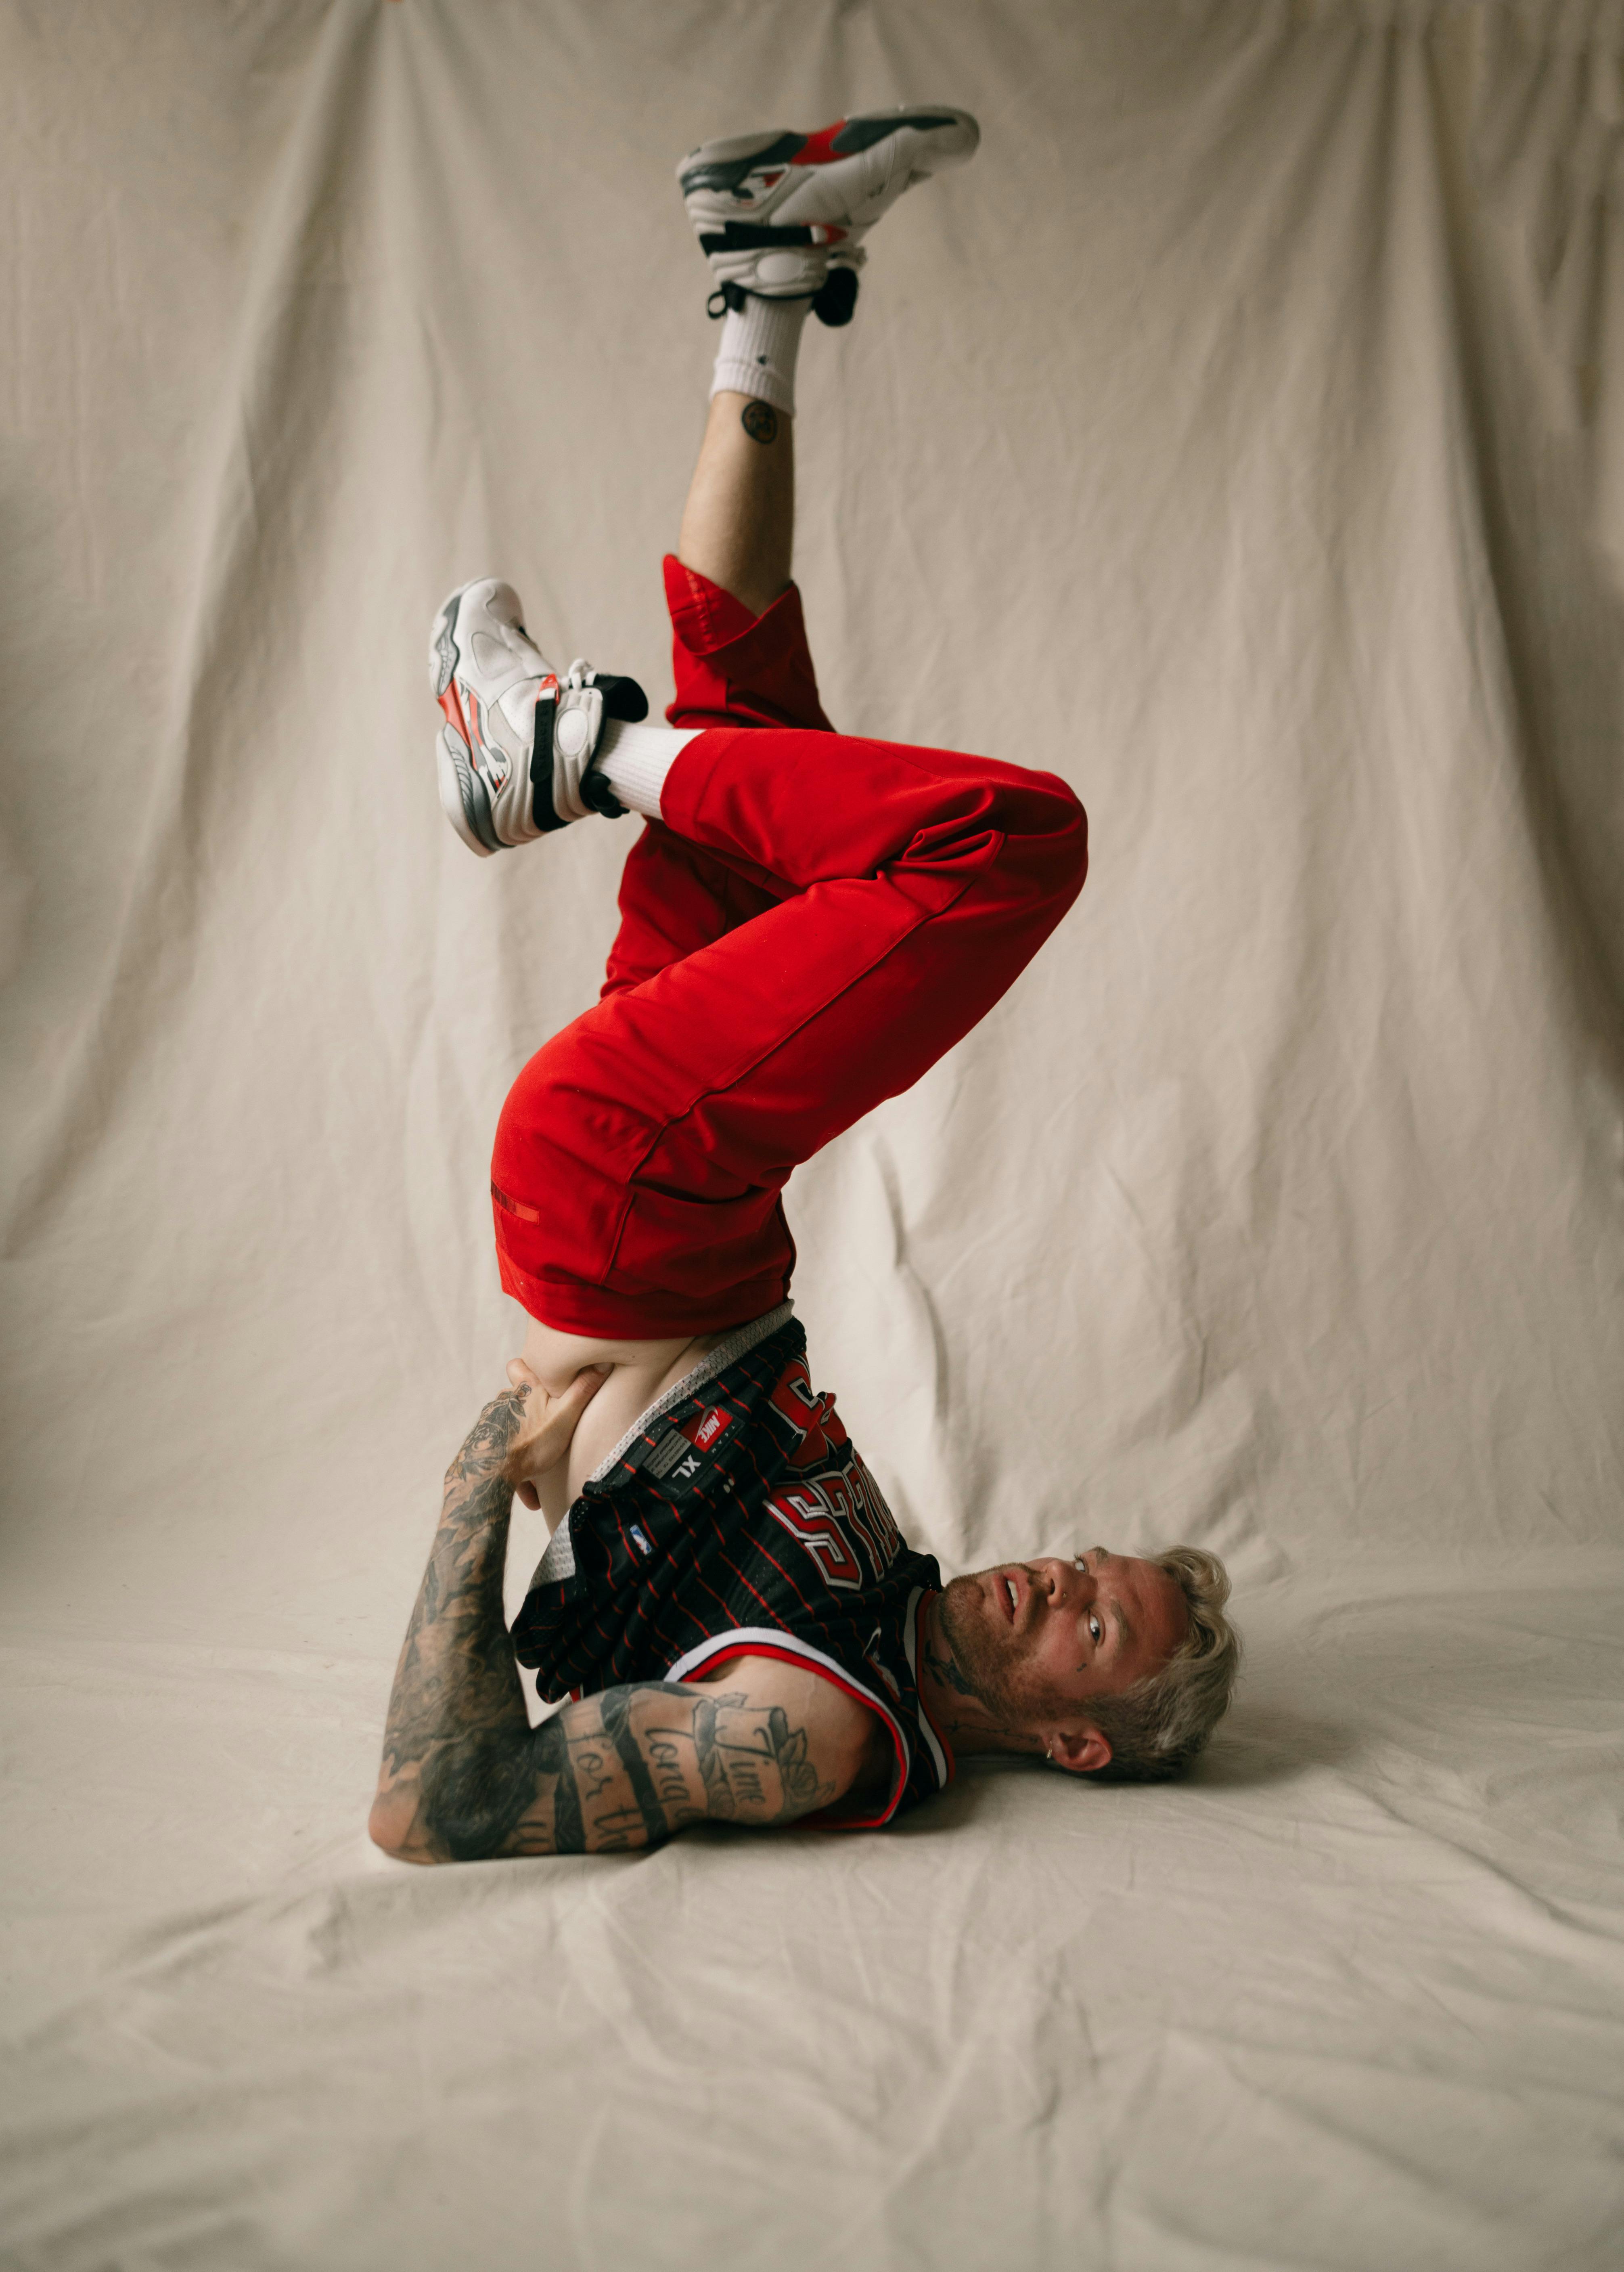 Man Hip Hop Dancer Bboy Freezes Stock Photo 1315283999 | Shutterstock